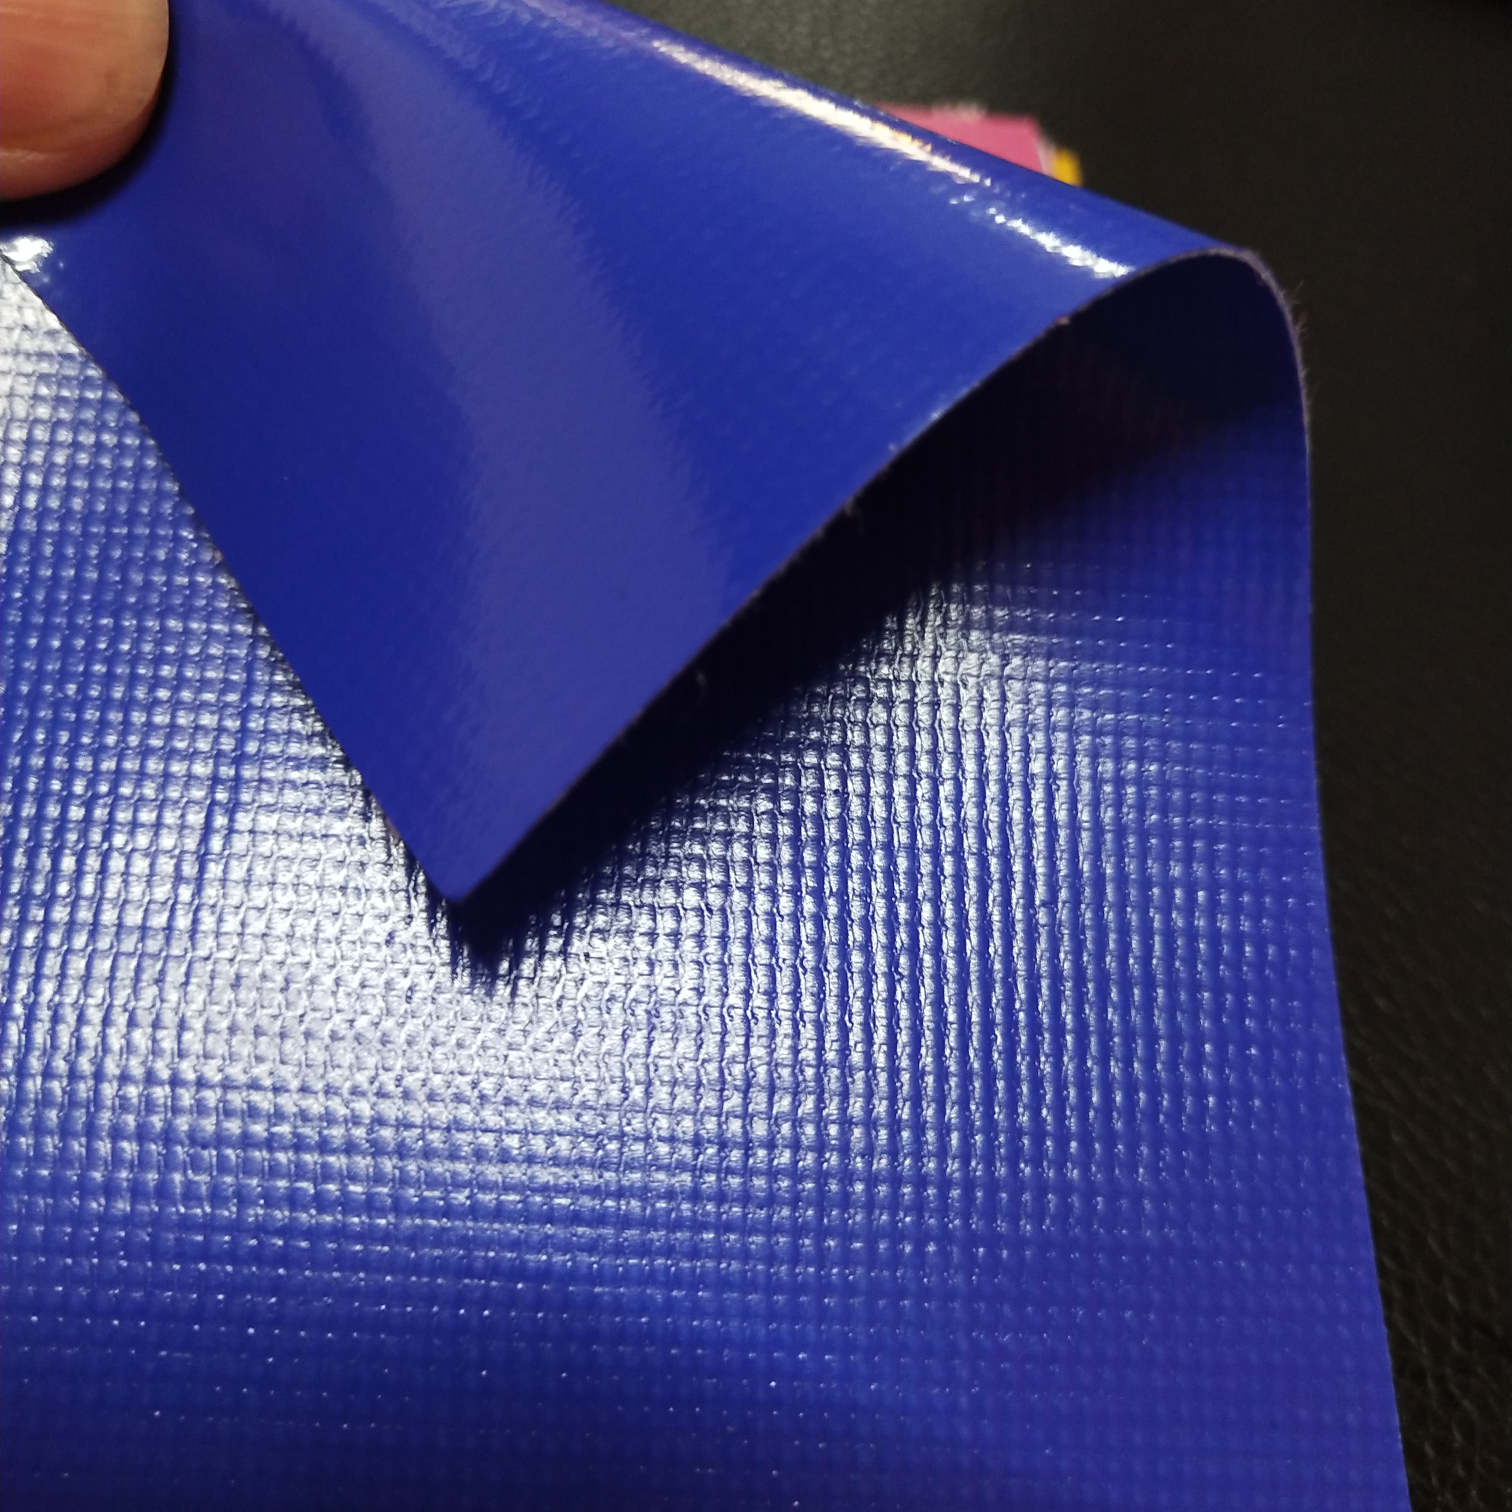 优质光面0.47mm厚深蓝色PVC夹网布  箱包布  机器罩家具罩  体育游乐产品  格种箱包袋专用面料详情图1